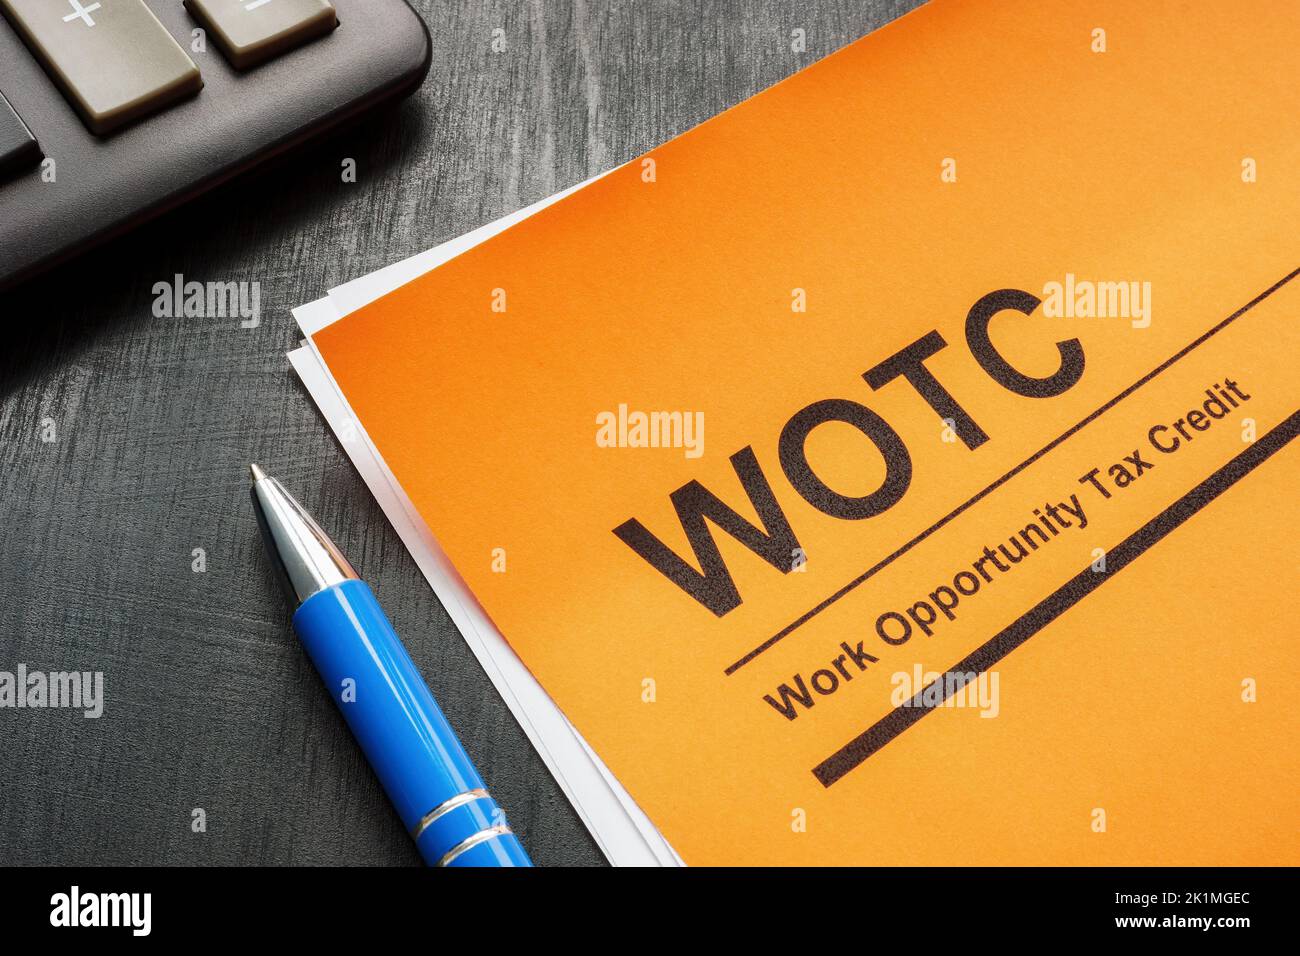 Oportunidad de trabajo crédito fiscal WOTC aplicación, pluma y bloc de notas. Foto de stock